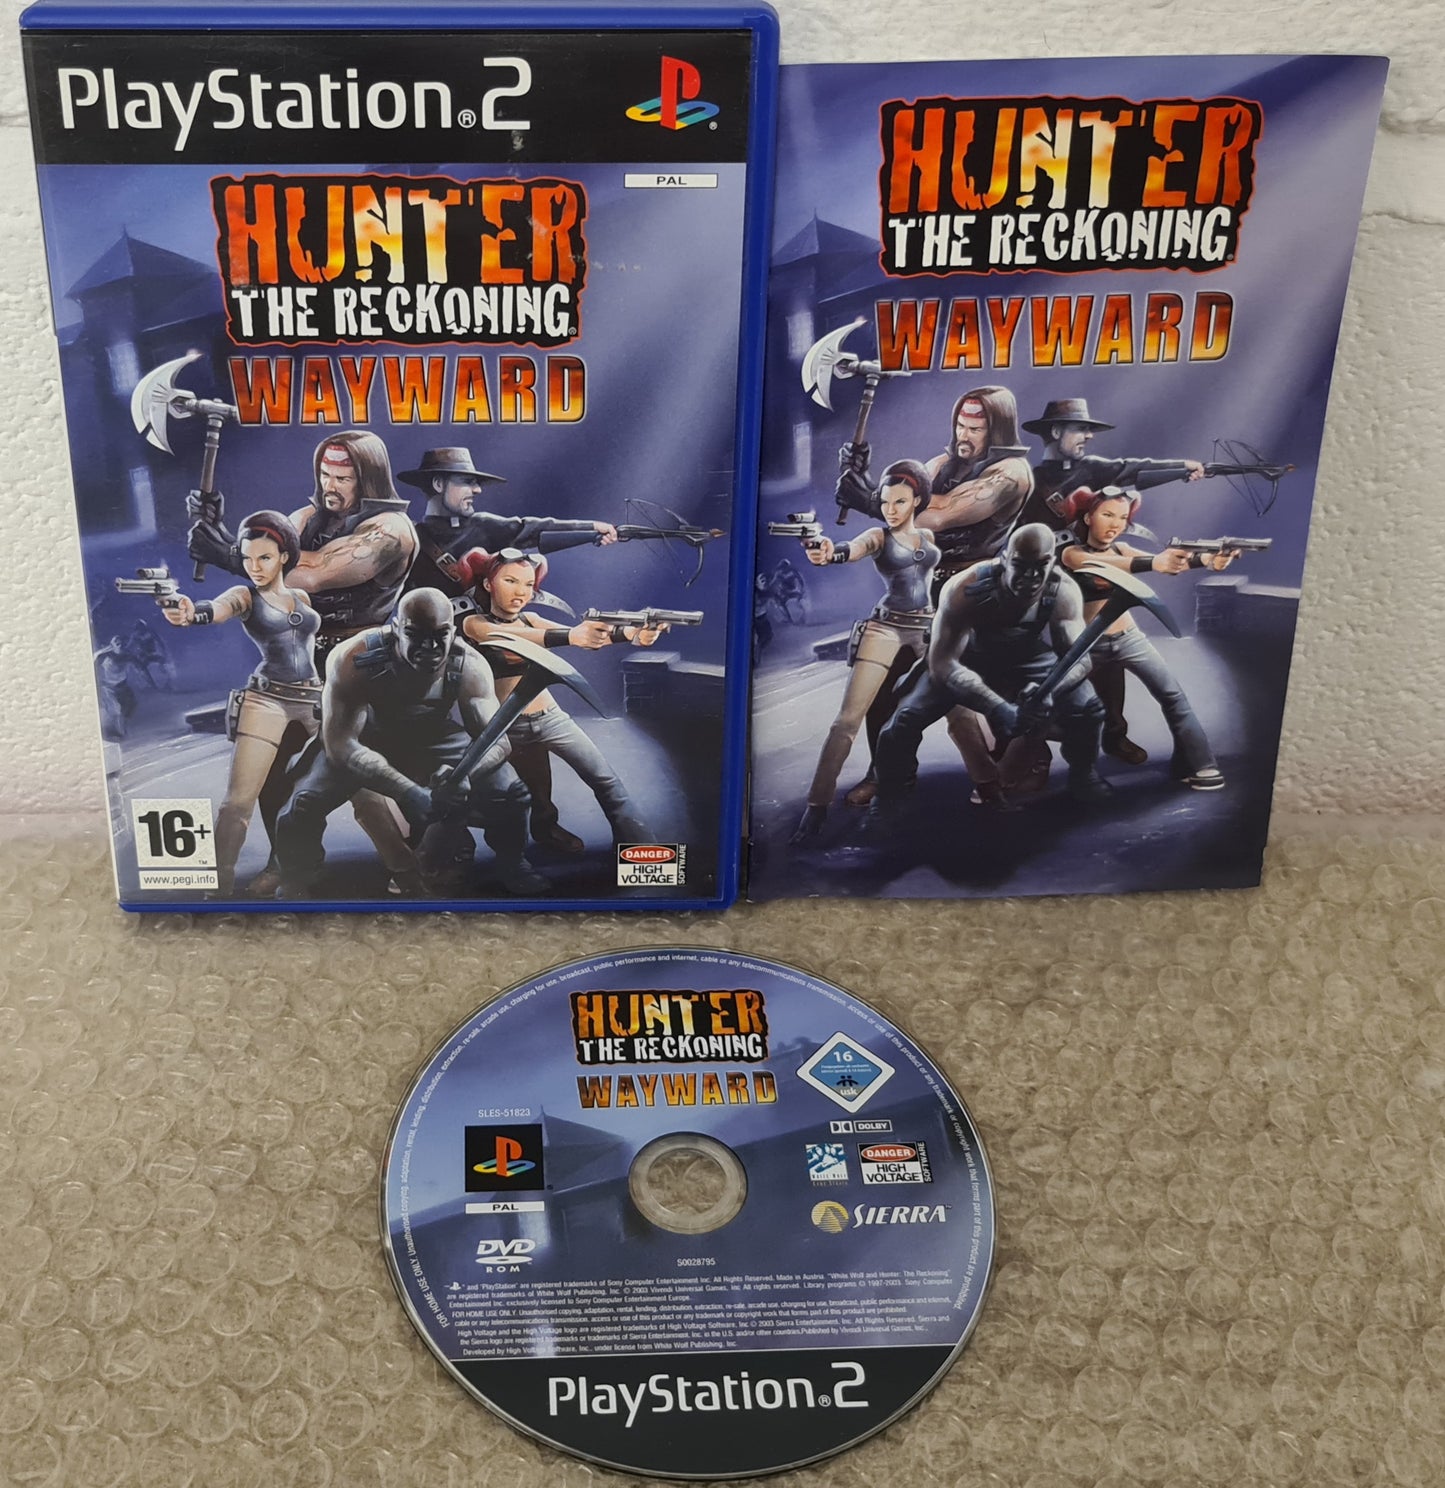 Hunter the Reckoning Wayward Sony Playstation 2 (PS2) Game